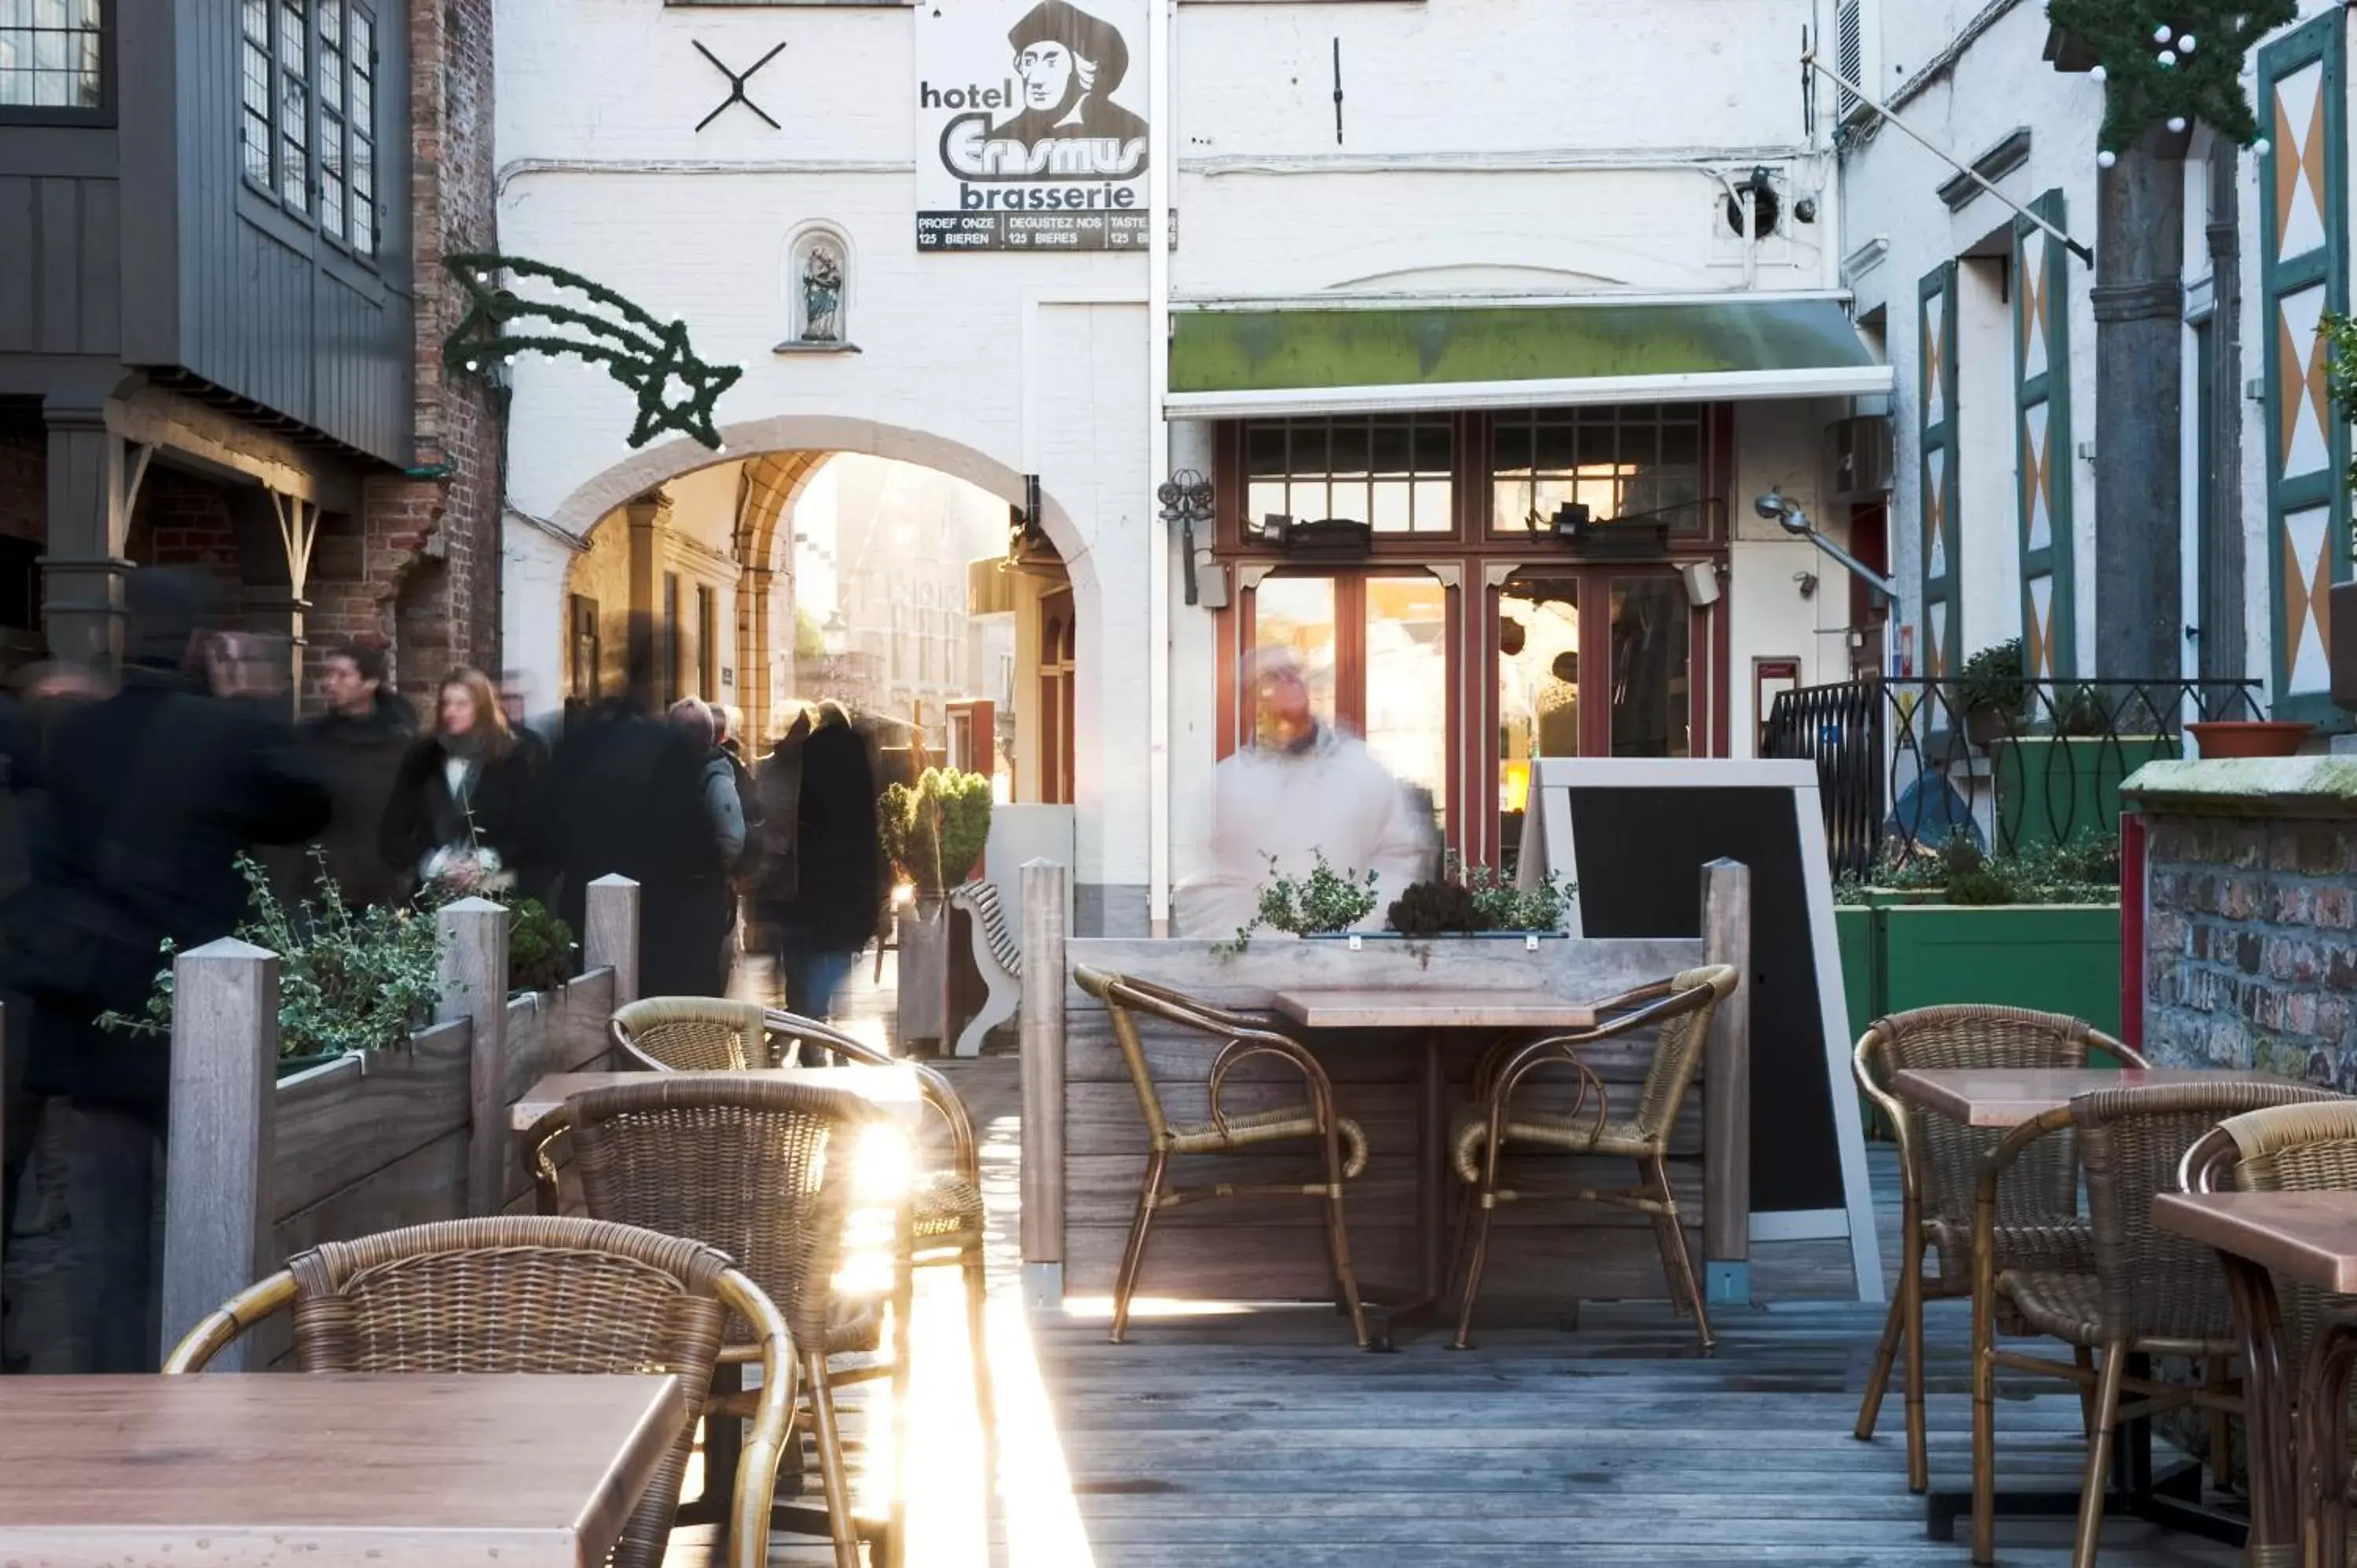 Balcony/Terrace, Restaurant/Places to Eat in Hotel Bourgoensch Hof